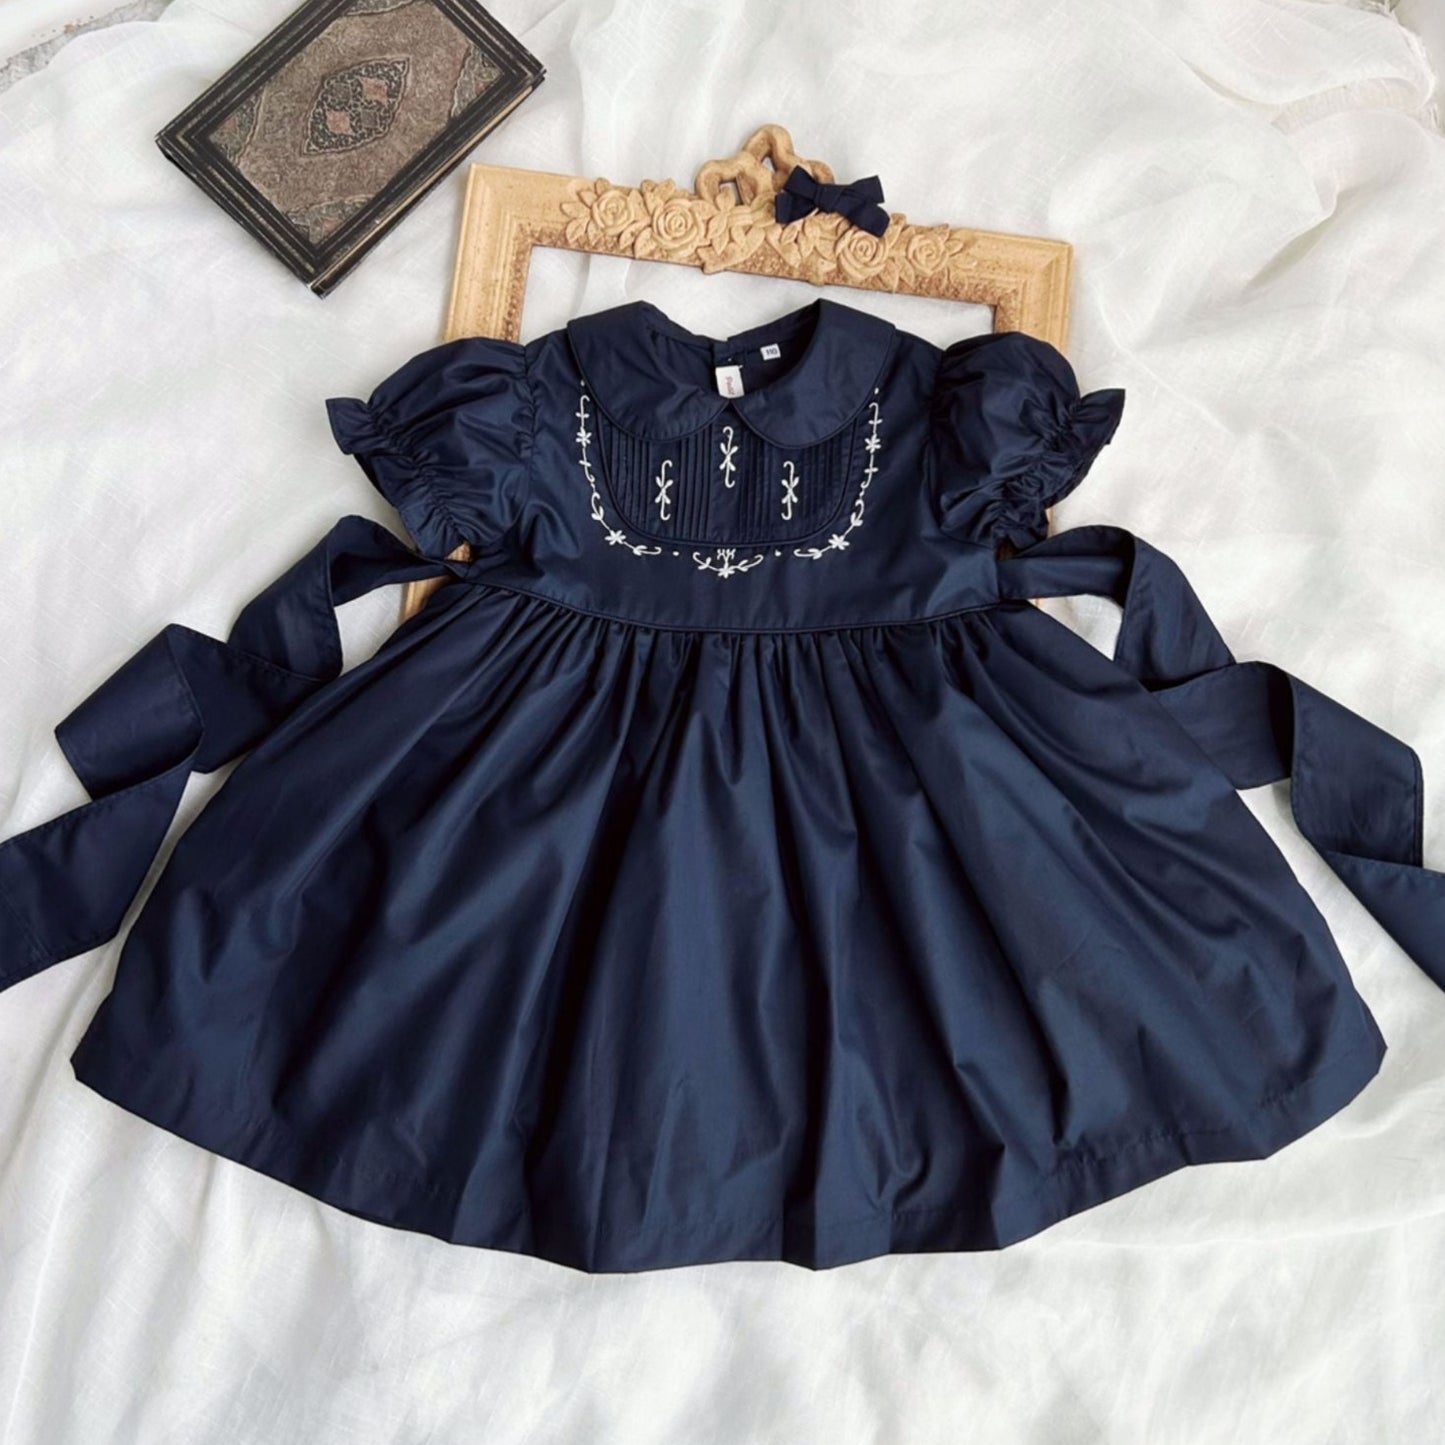 Stunning Dark Blue Embroidered Dress,